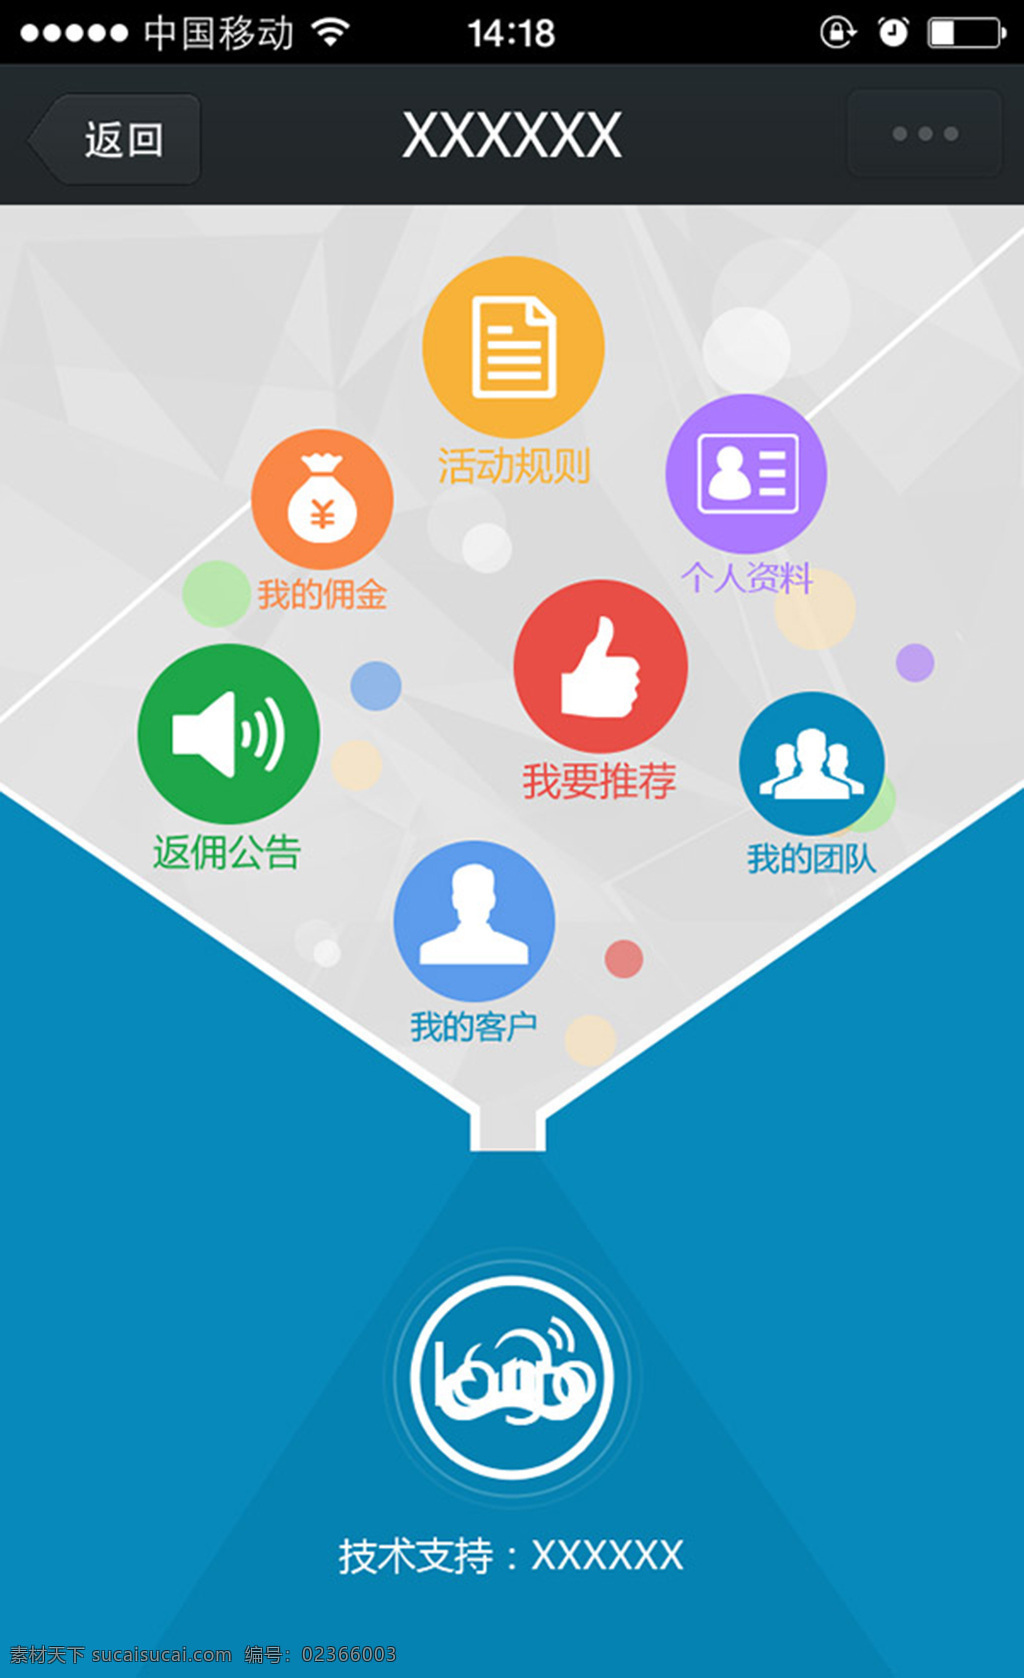 手机 理财 软件 app 金融理财 设计素材 手机界面 端 网站首页 网站设计图标 扁平风格 蓝色